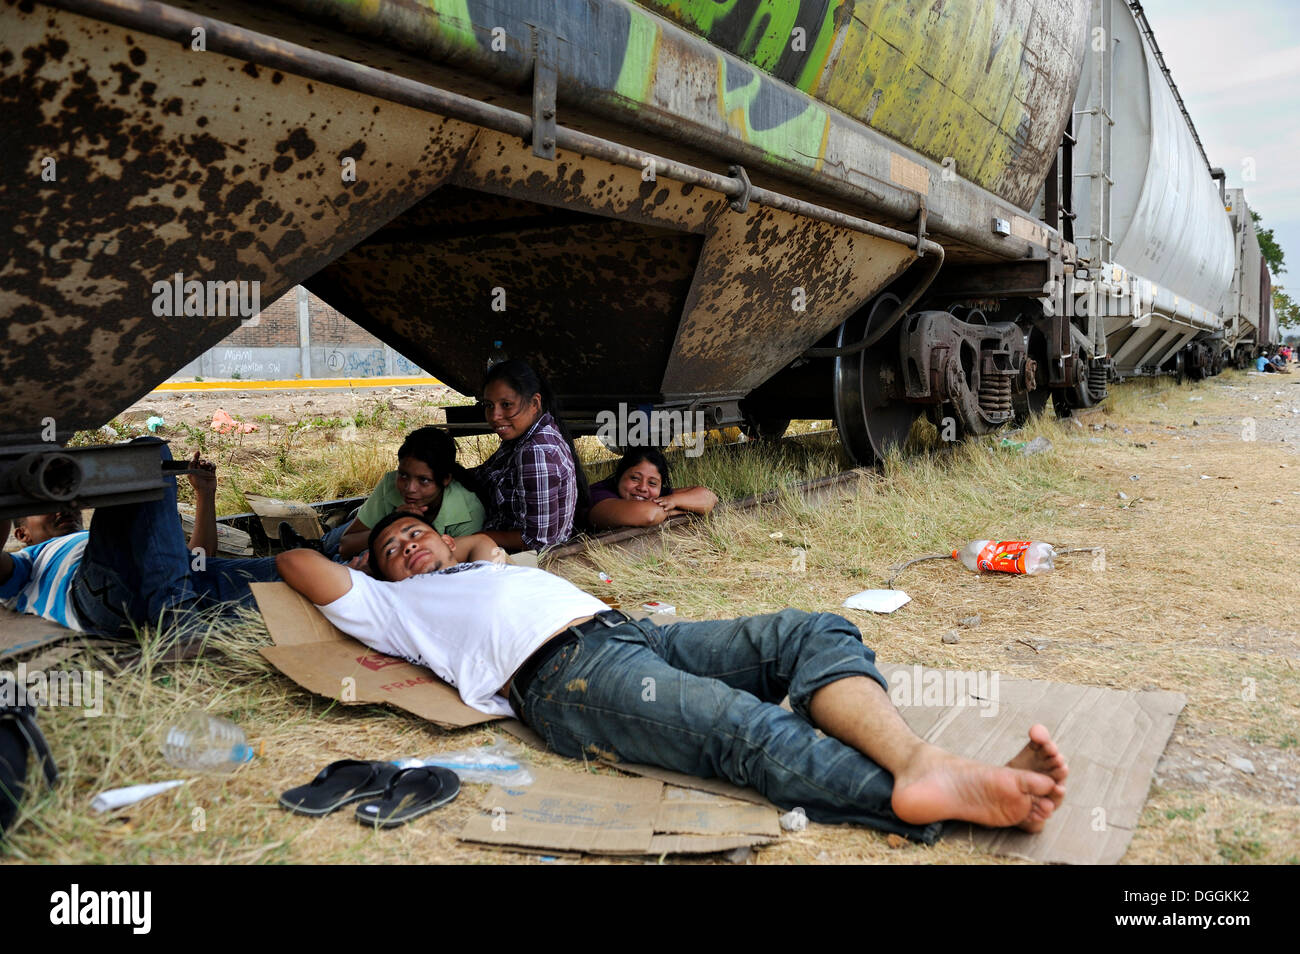 Les immigrants illégaux d'Amérique latine en route vers les États-Unis, l'attente à une station pour le prochain train de fret à bord comme Banque D'Images